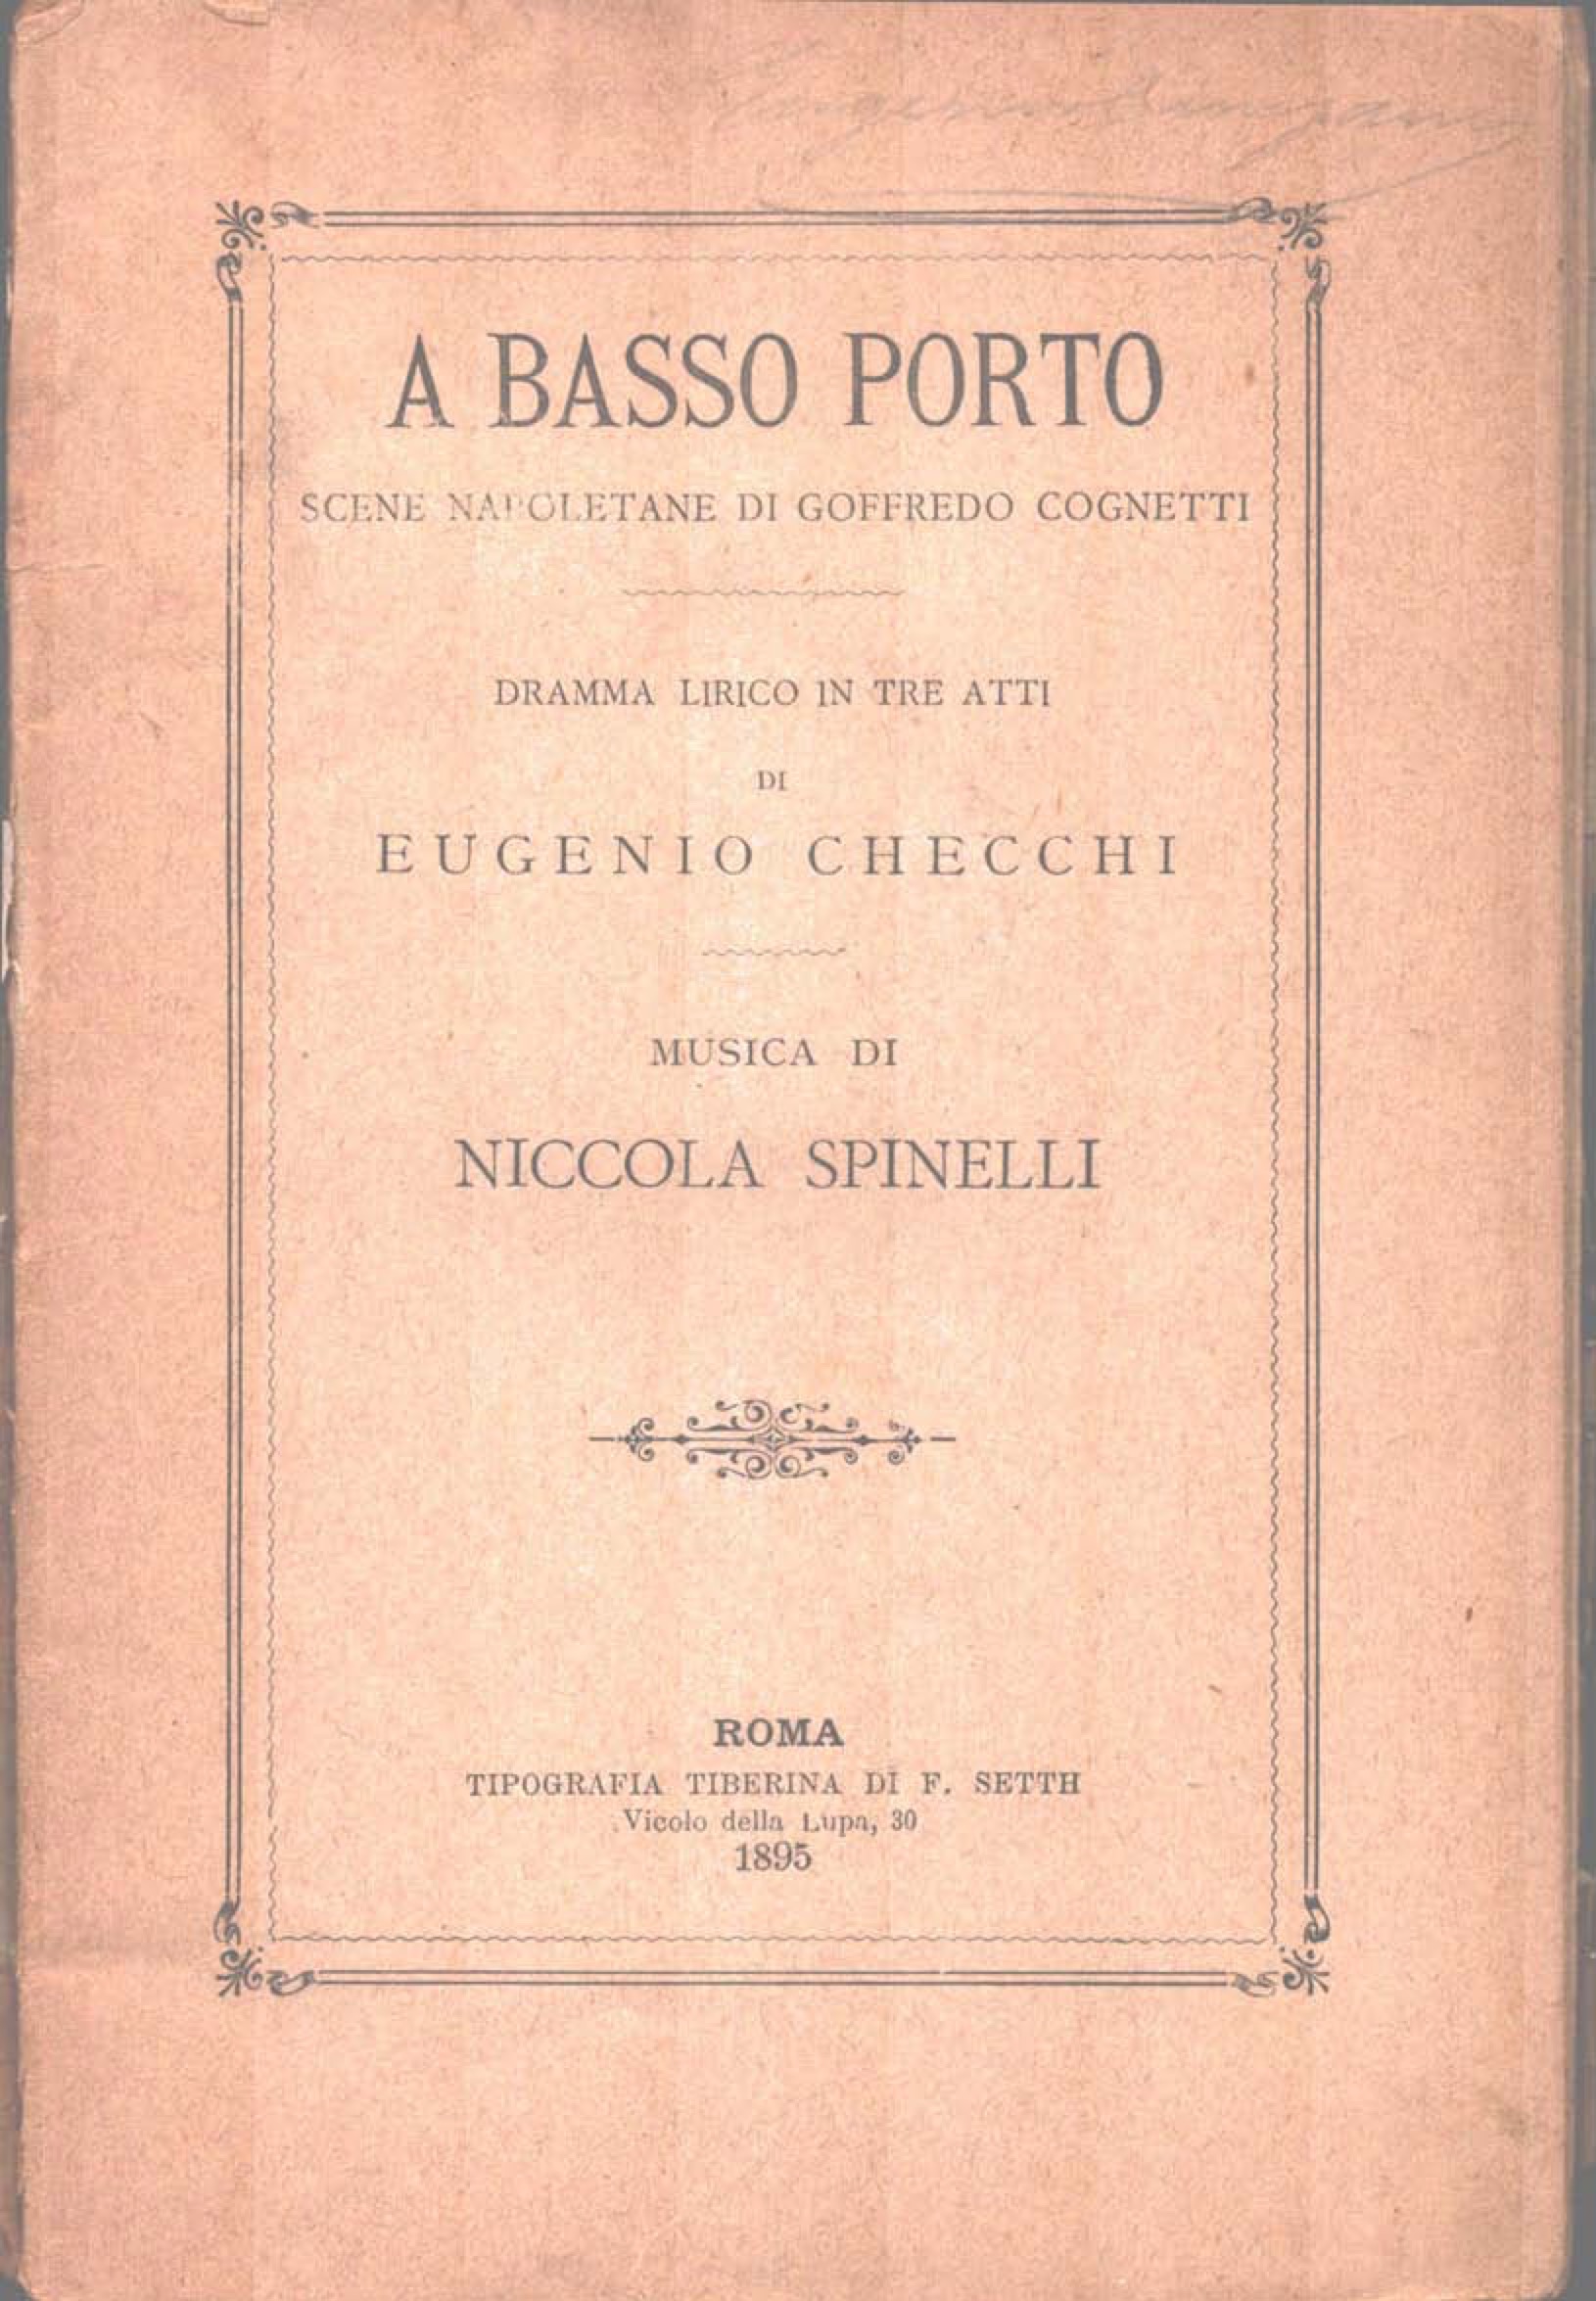 Frontespizio – Libretto "A basso porto" N. Spinelli